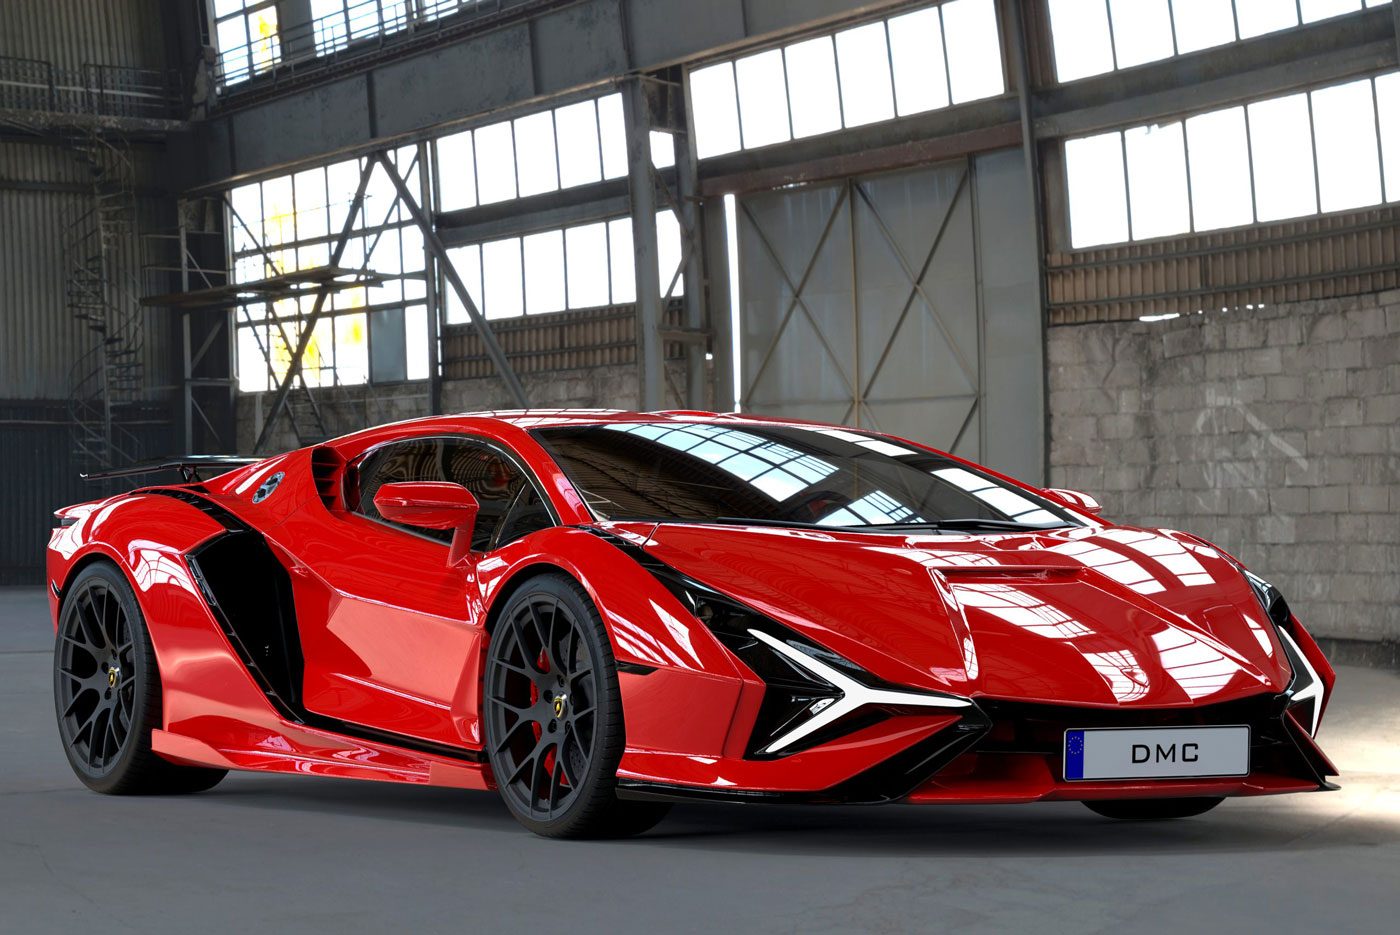 Gaat de opvolger van de Lamborghini Aventador er zo uitzien? - Autoblog.nl